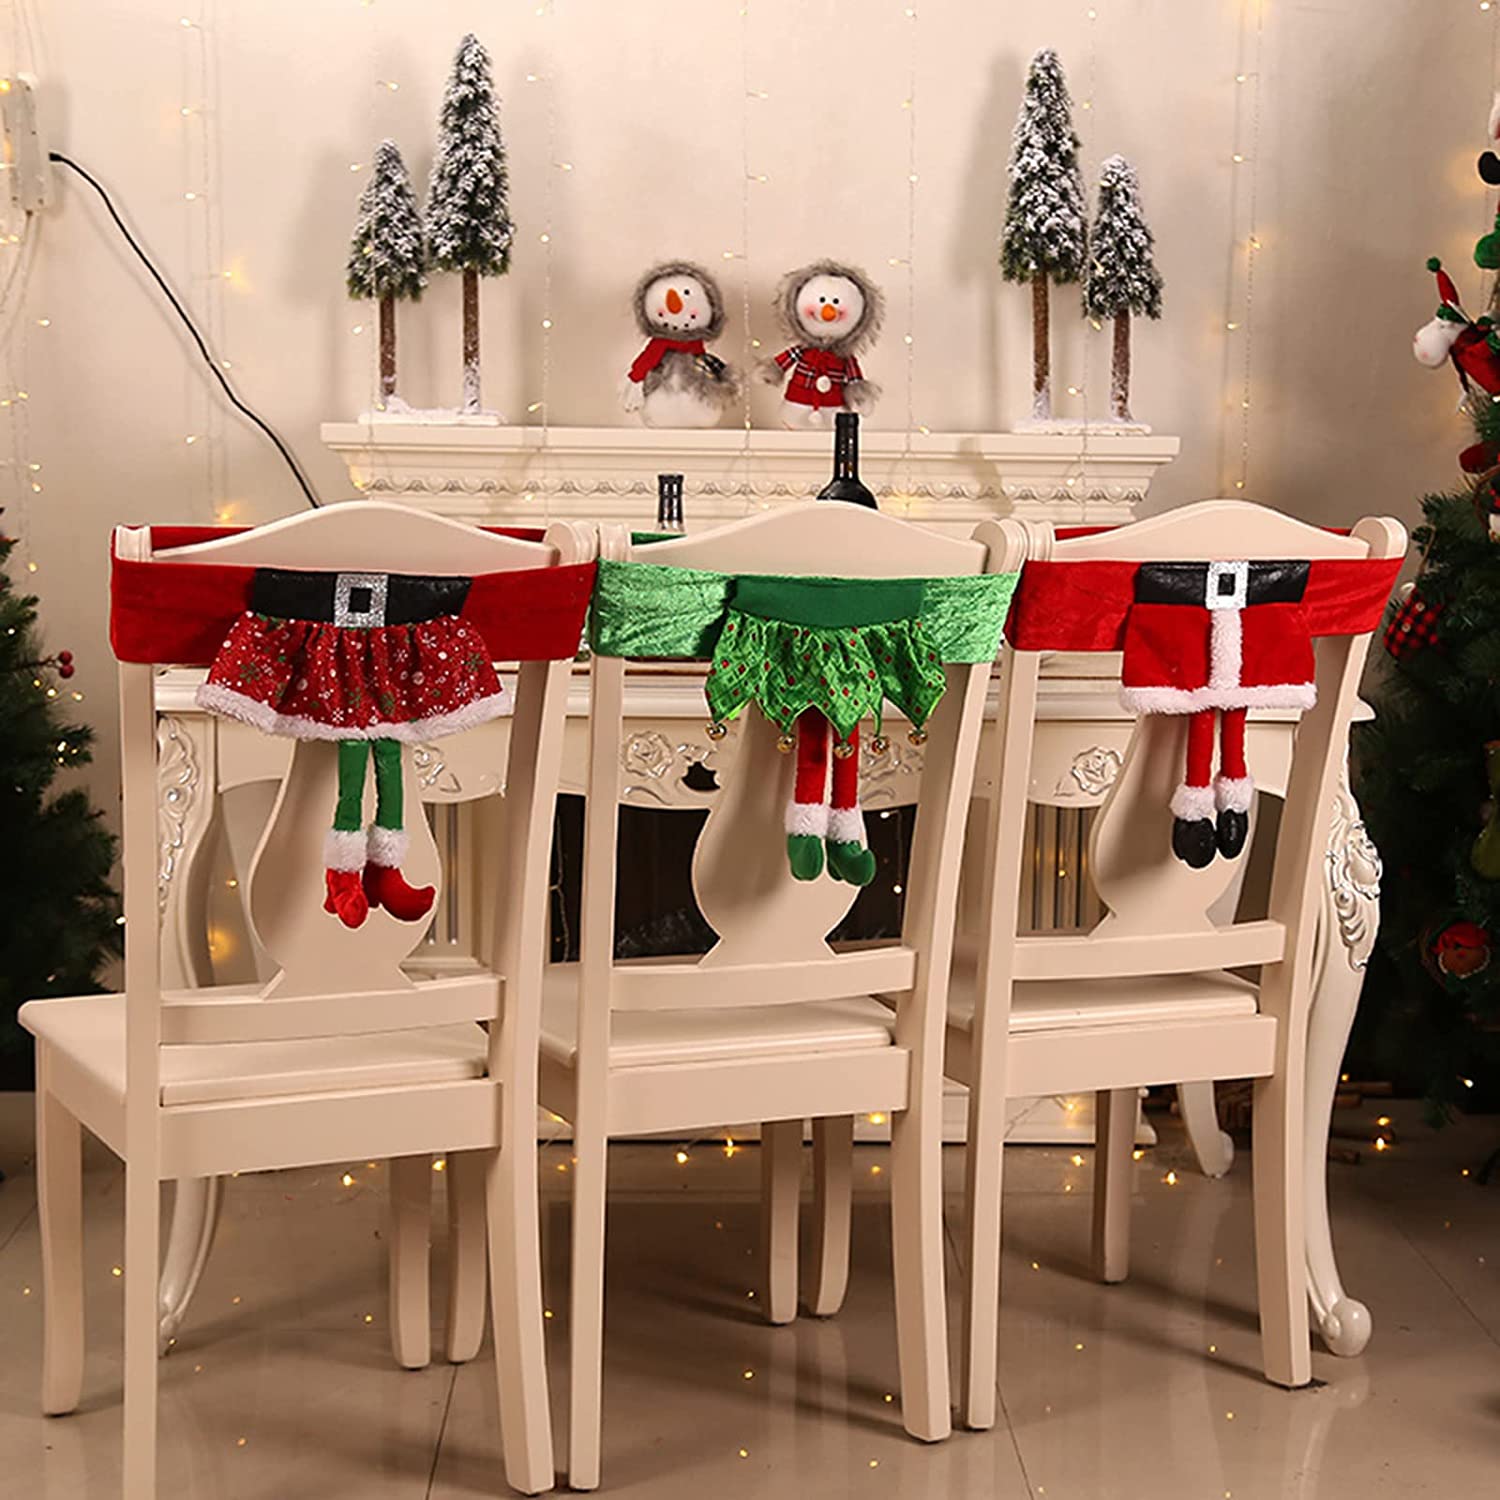 Sắm loạt đồ phụ kiện trang trí bàn tiệc Giáng sinh thật lung linh trên gian hàng quốc tế của Shopee với mức giá chỉ từ 15k - Ảnh 13.